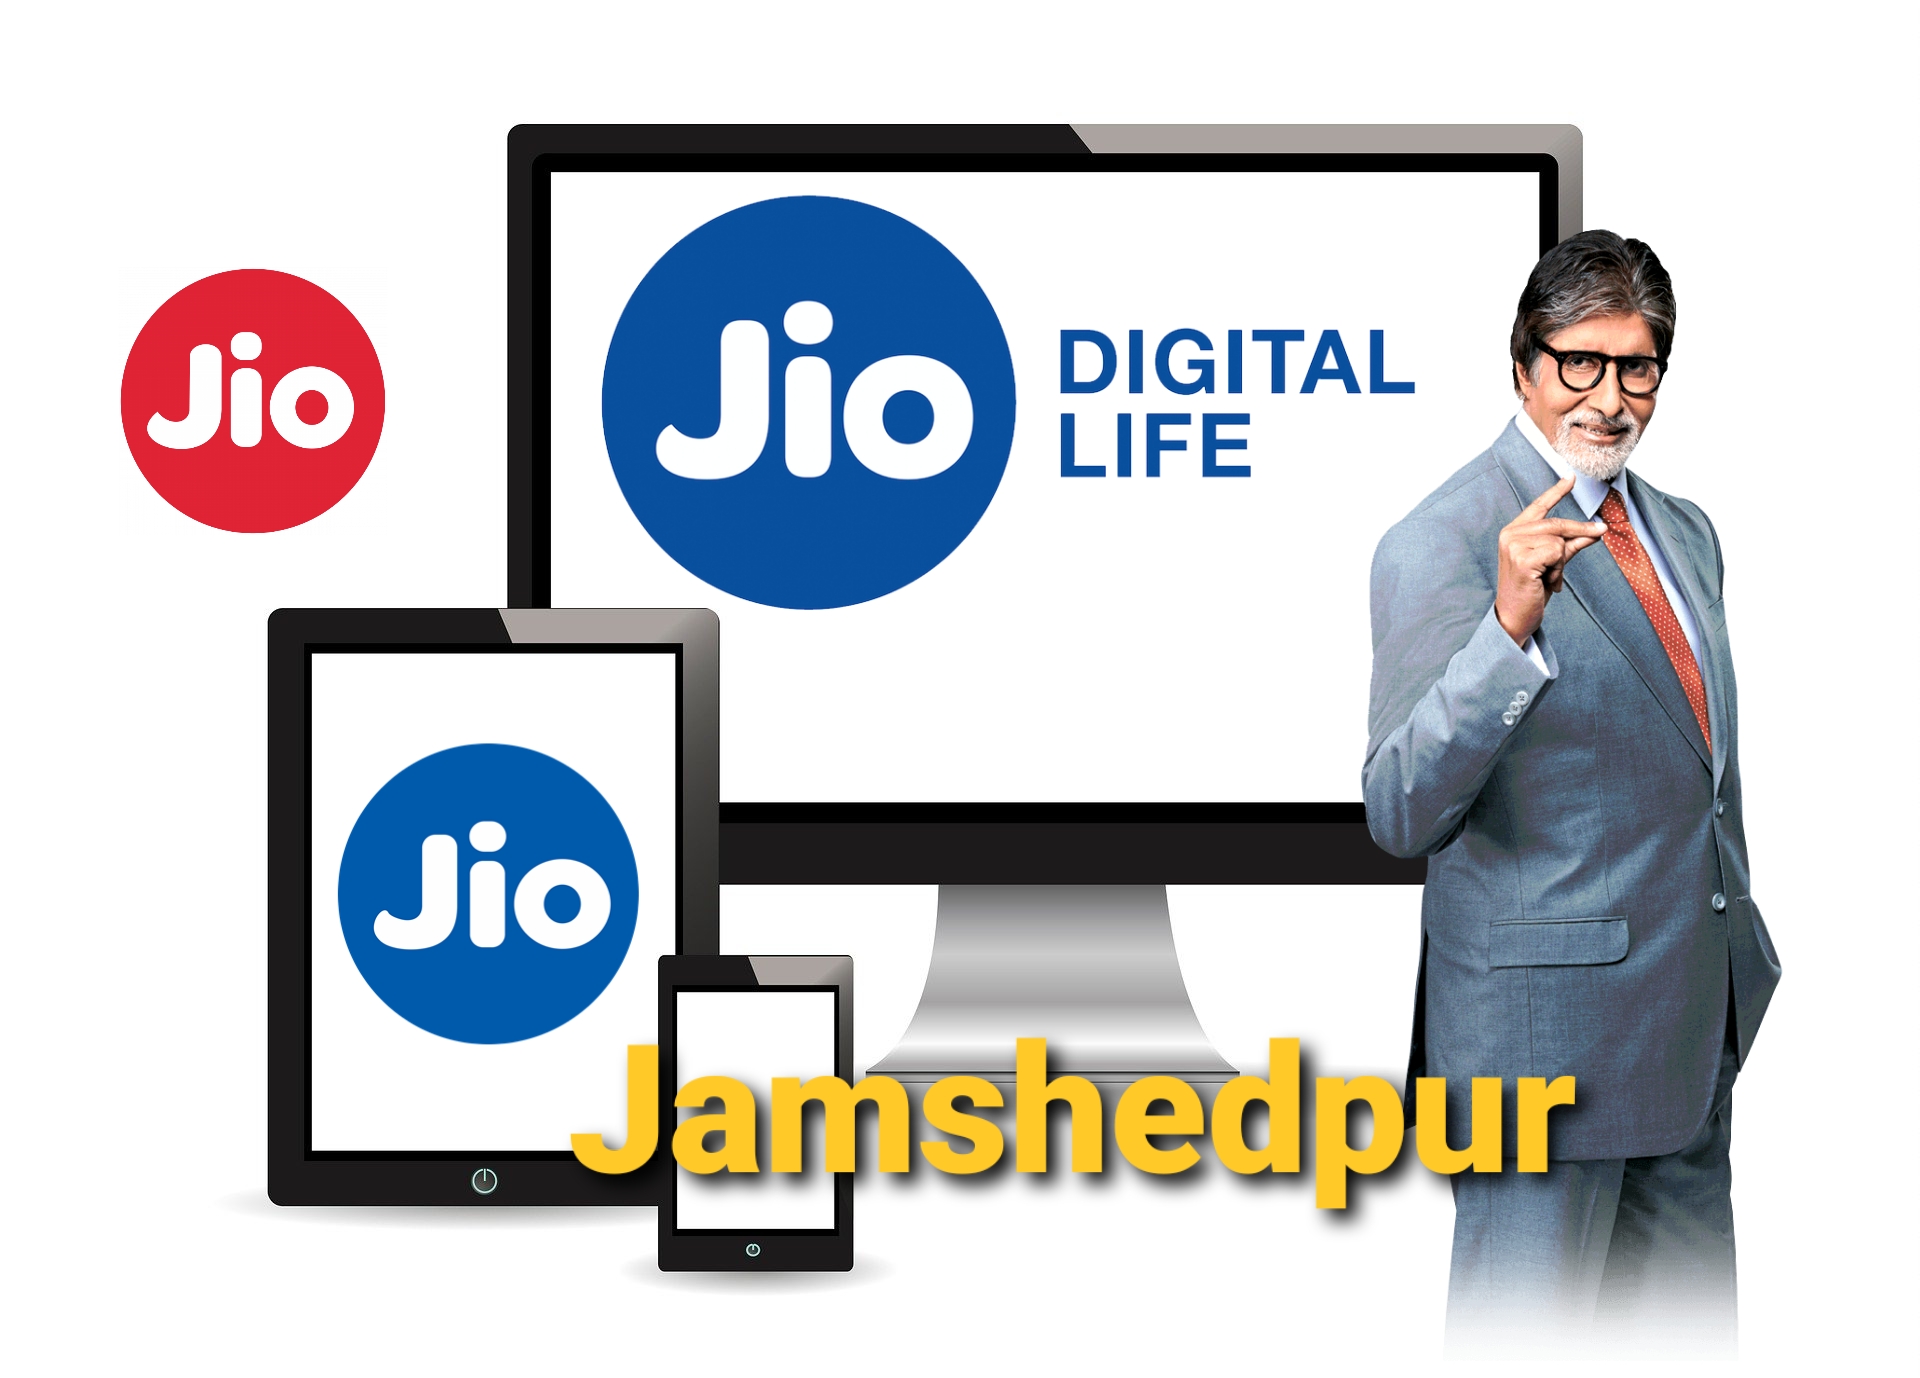 Jio Fiber Jamshedpur [Registration] Plans, Price, Offers, Customer Care